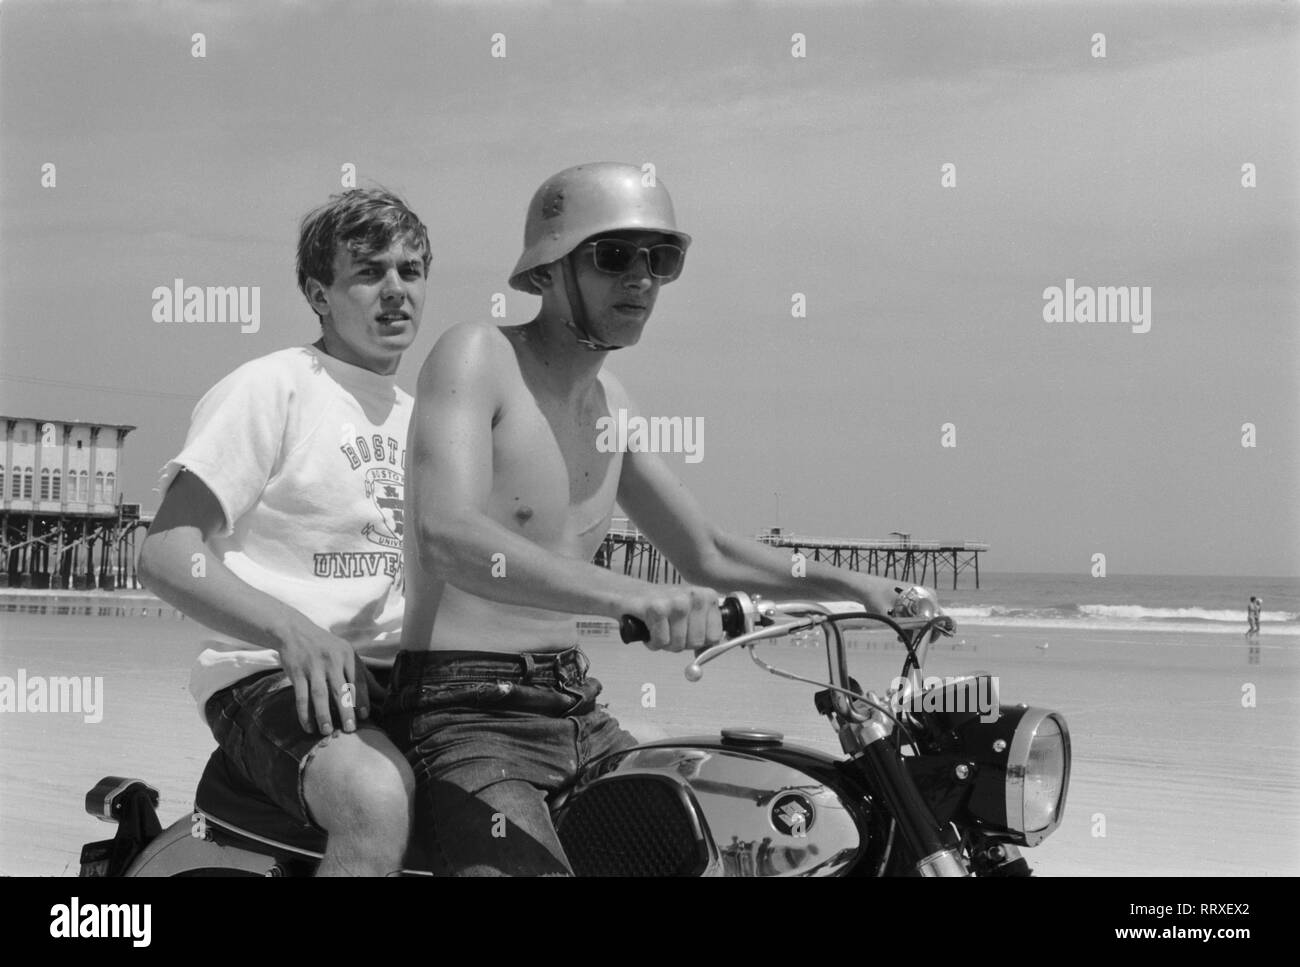 People - Menschen, Motorrad, Strand, Helm, Stahlhelm, Sonnenbrille, Suzuki am Daytona Beach in Florida, USA 1959. Stock Photo